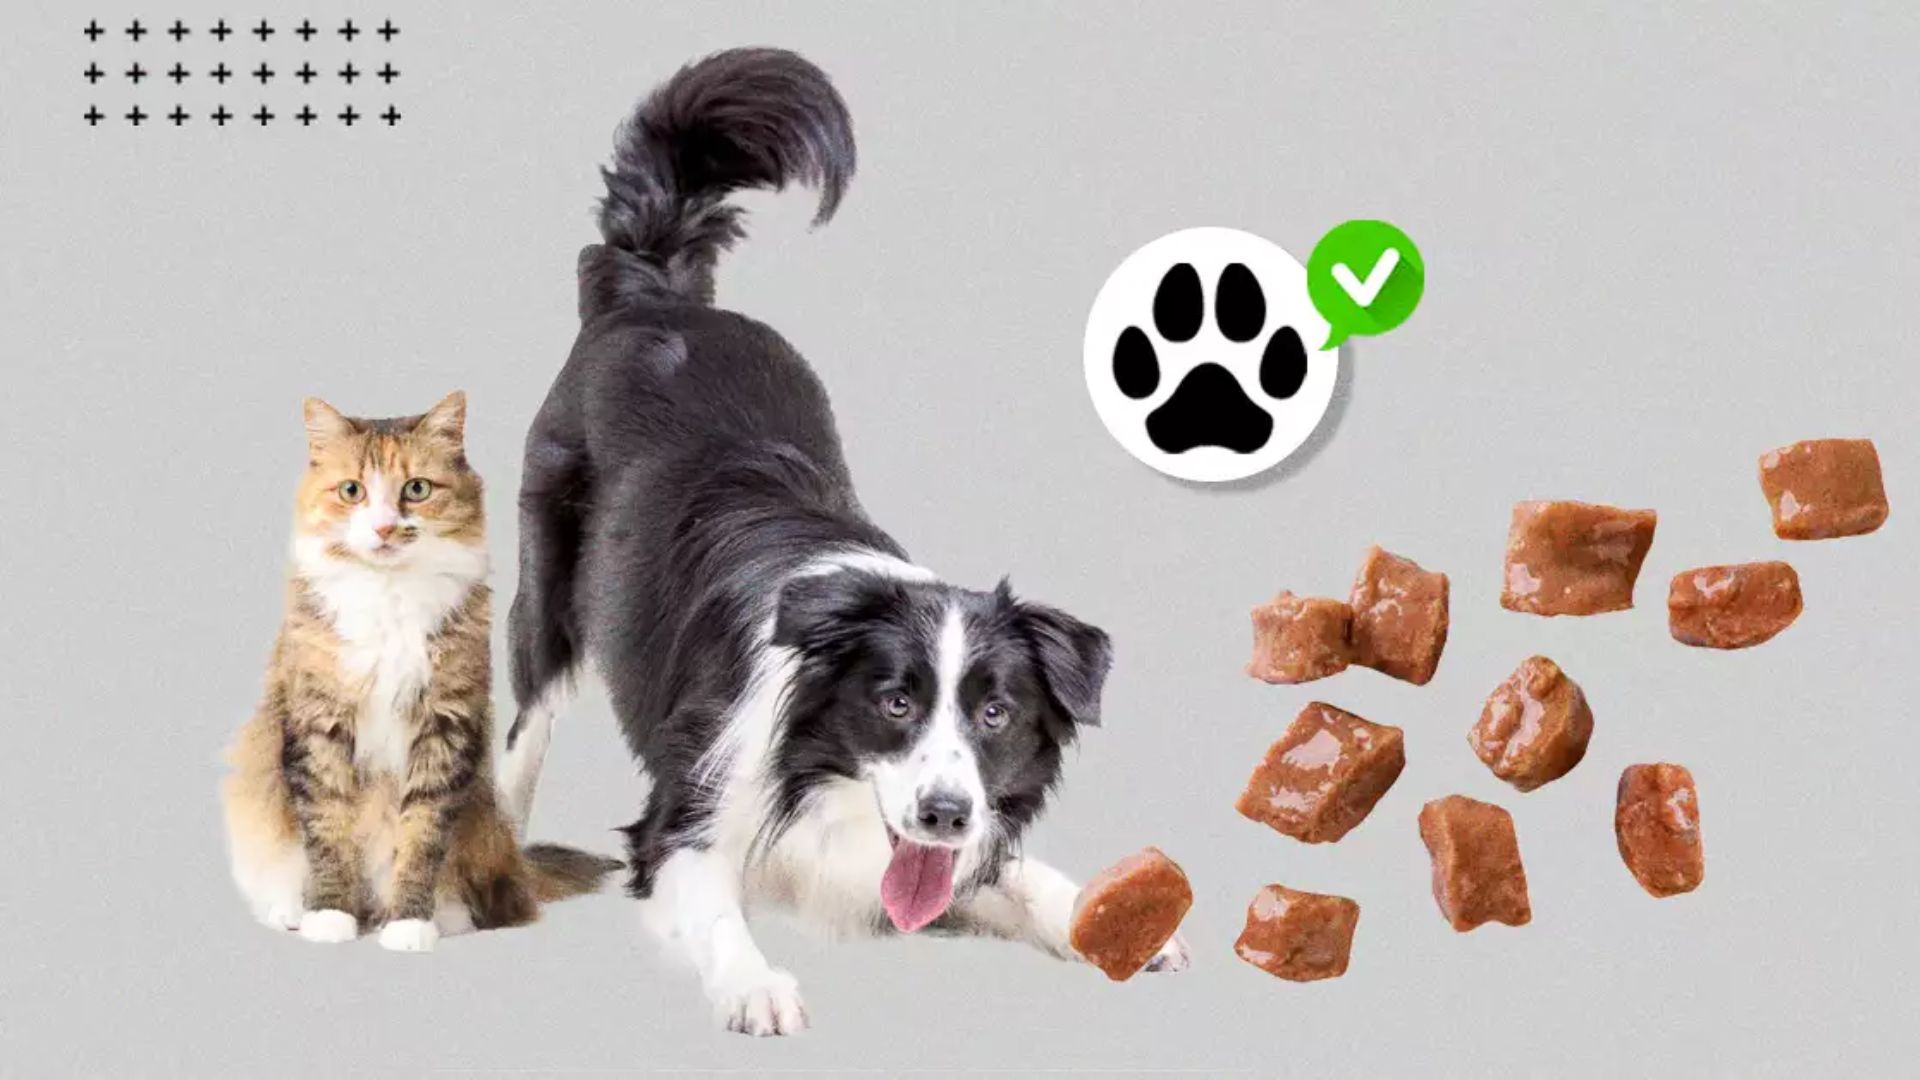 De sobras a gourmet: ¿Comen mejor los perros y gatos que sus dueños?